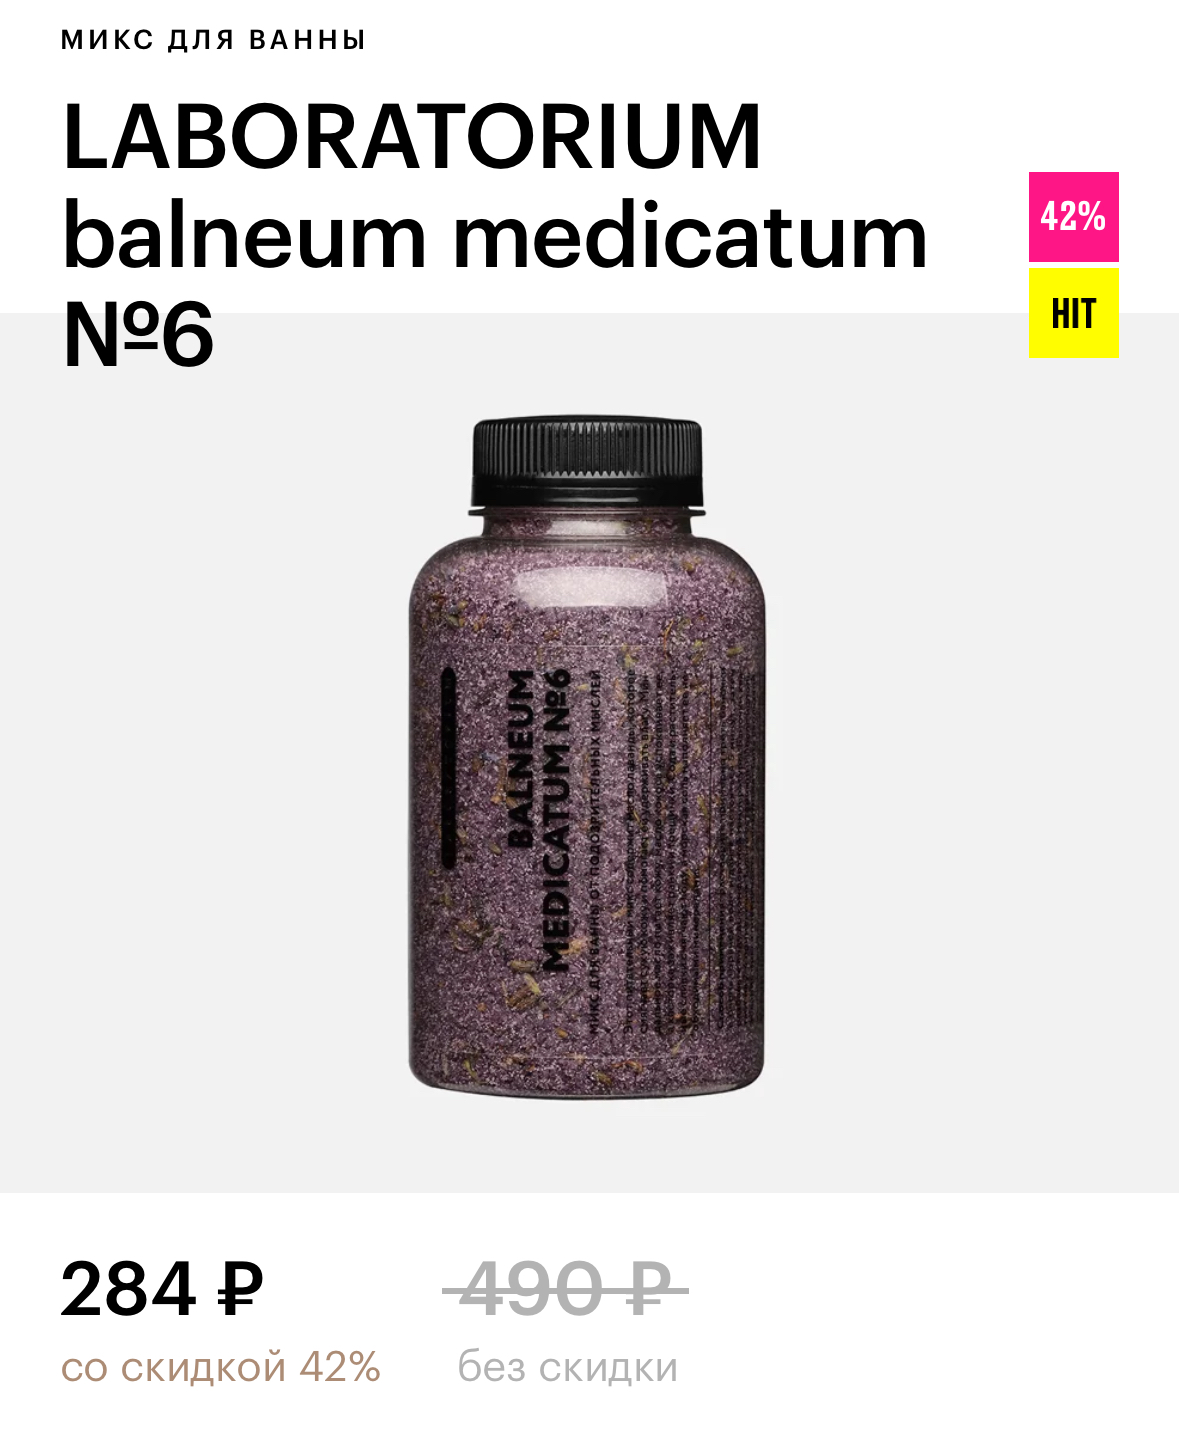 LABORATORIUM balneum medicatum №6